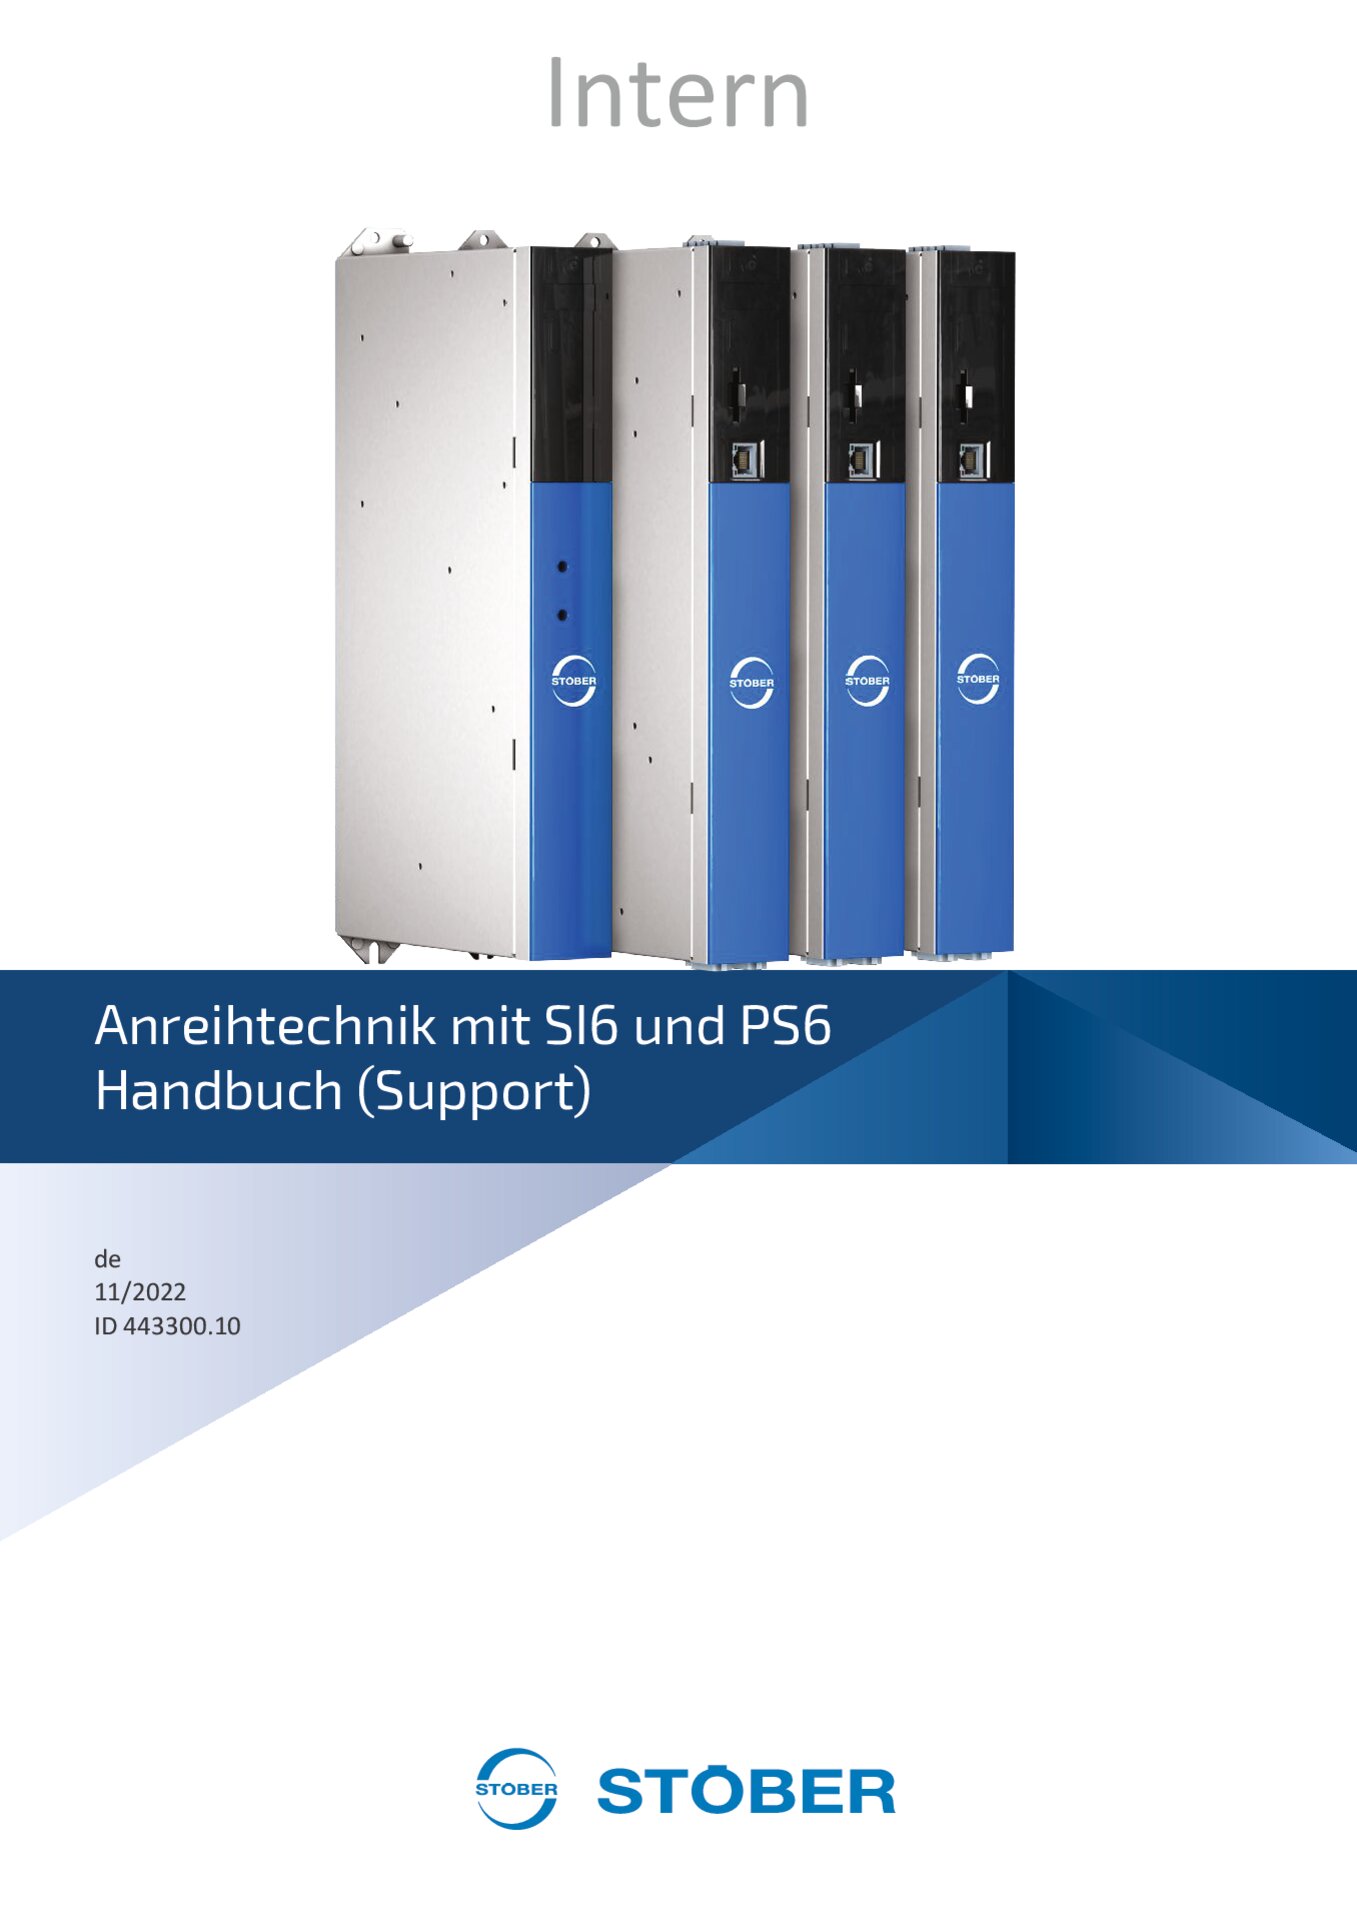 Handbuch SI6 und PS6 - Support